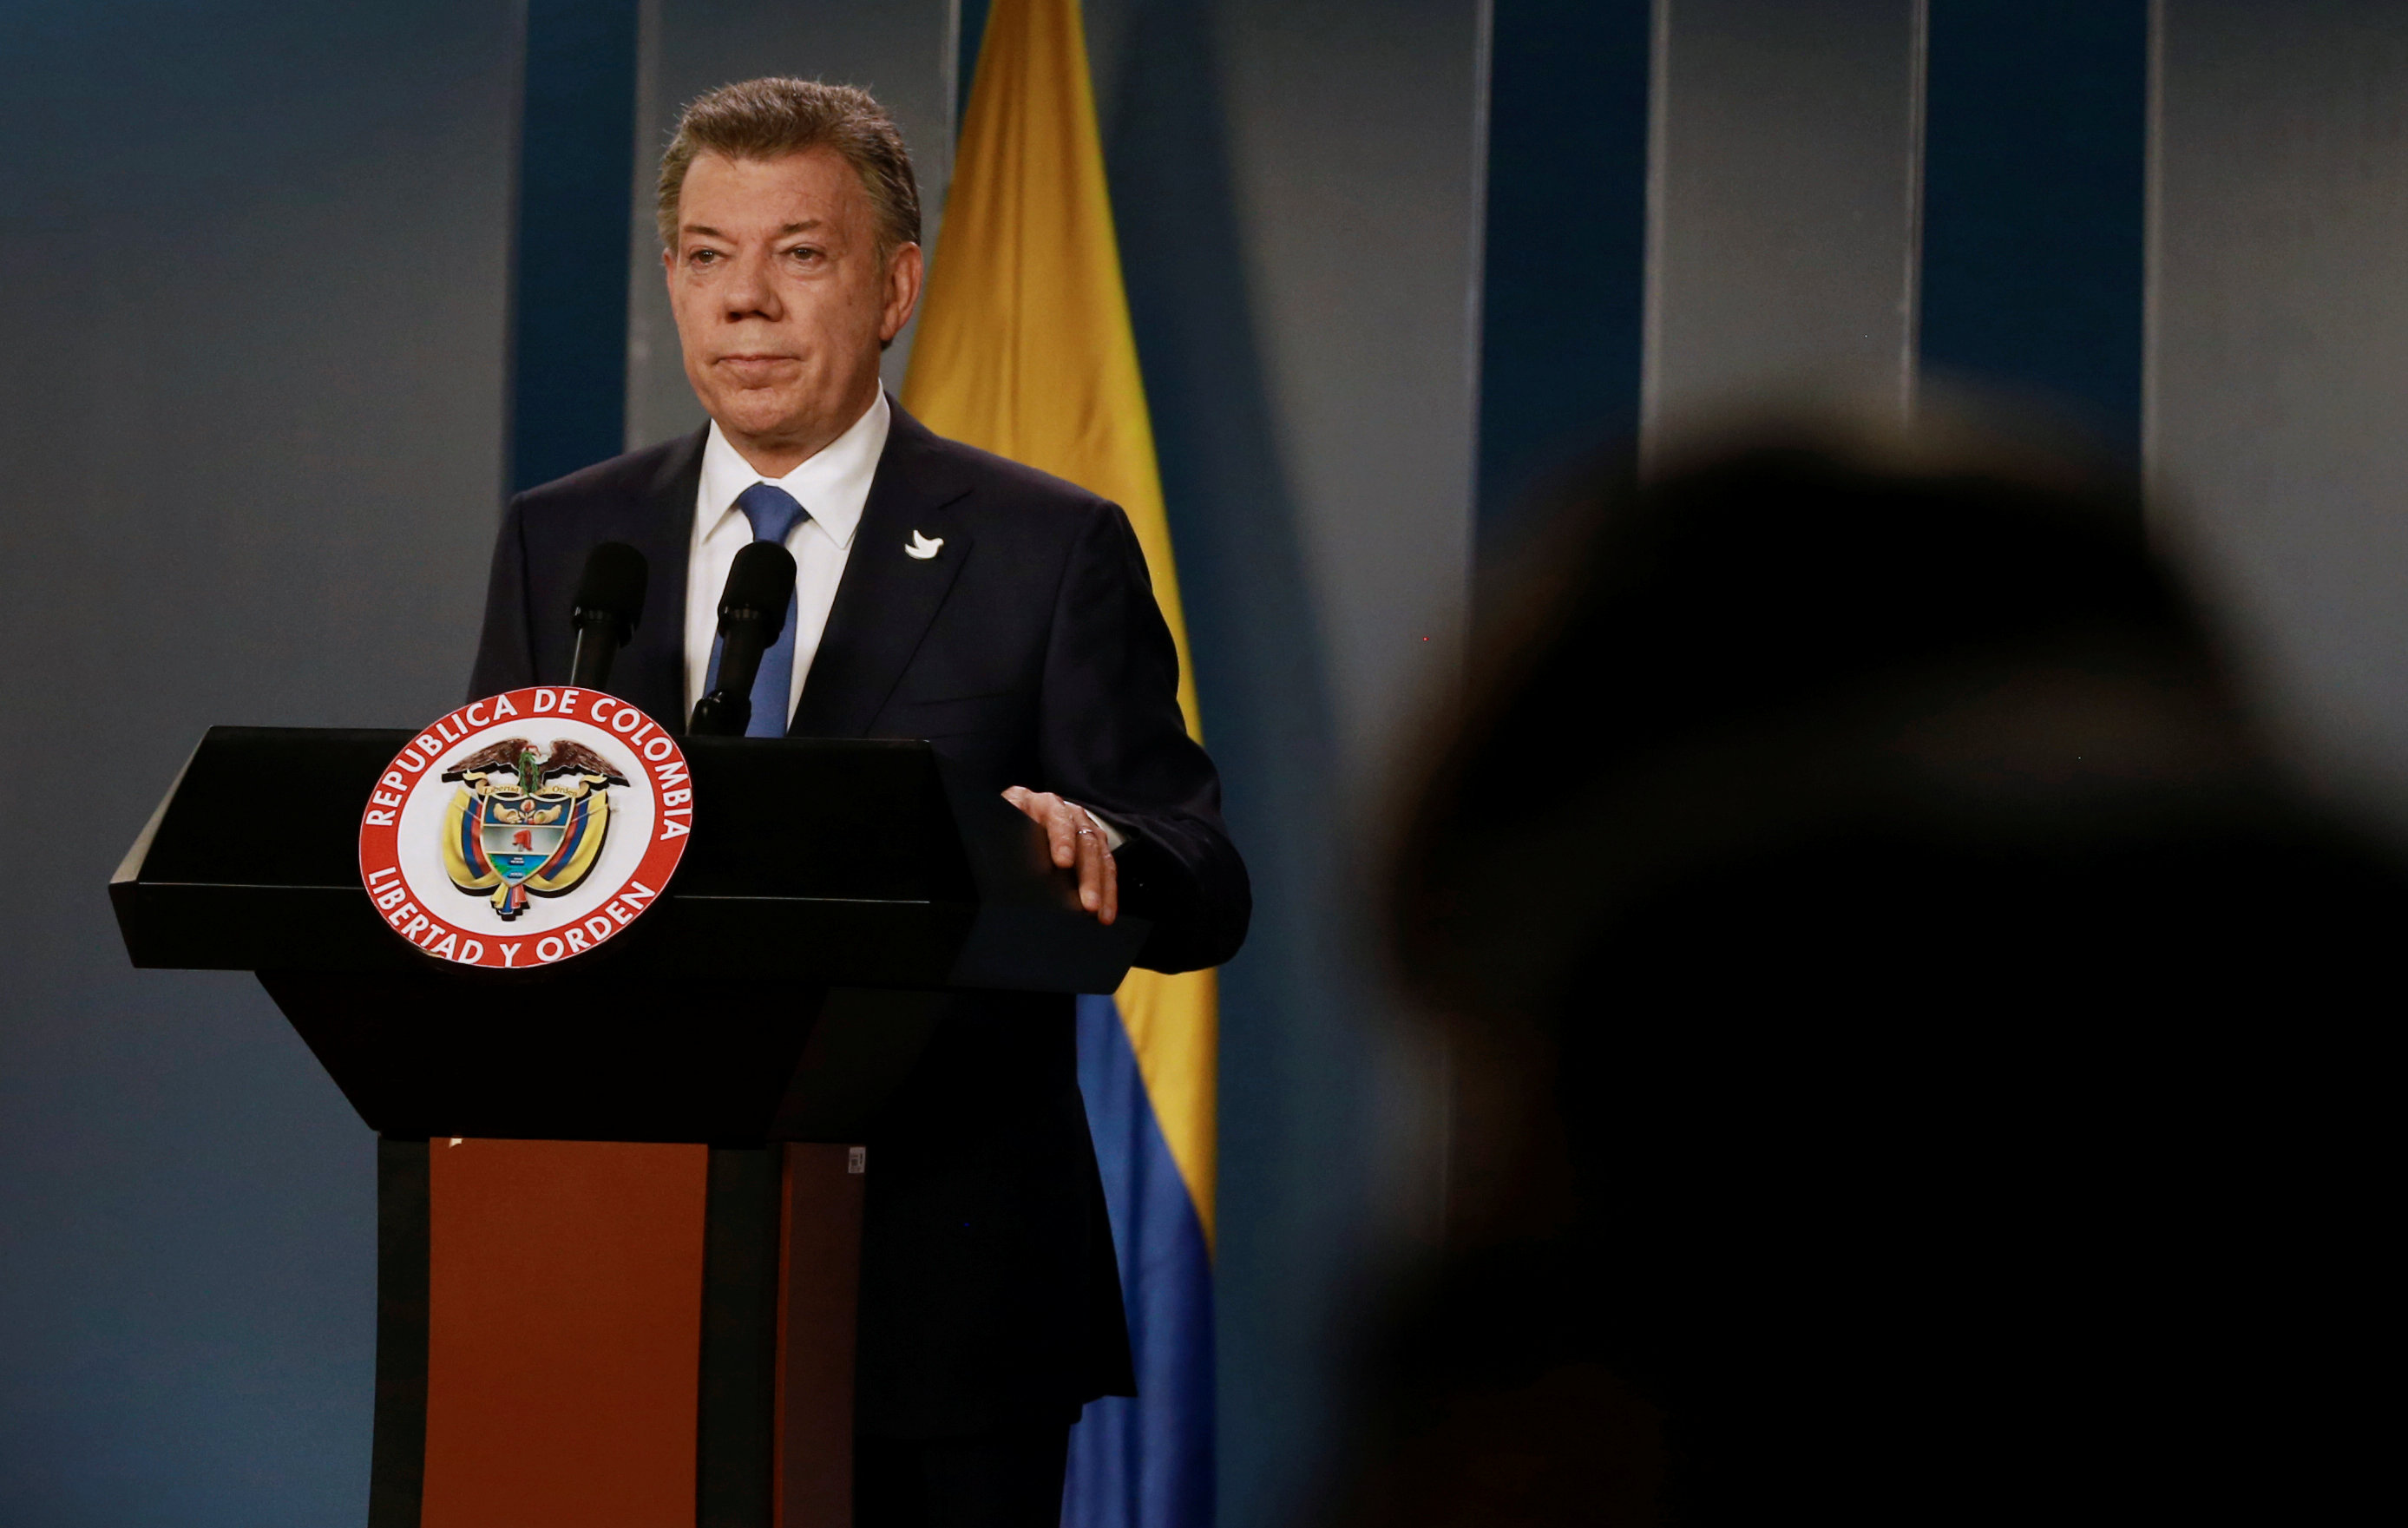 Santos rechaza atentado de Londres y expresa su solidaridad con Reino Unido